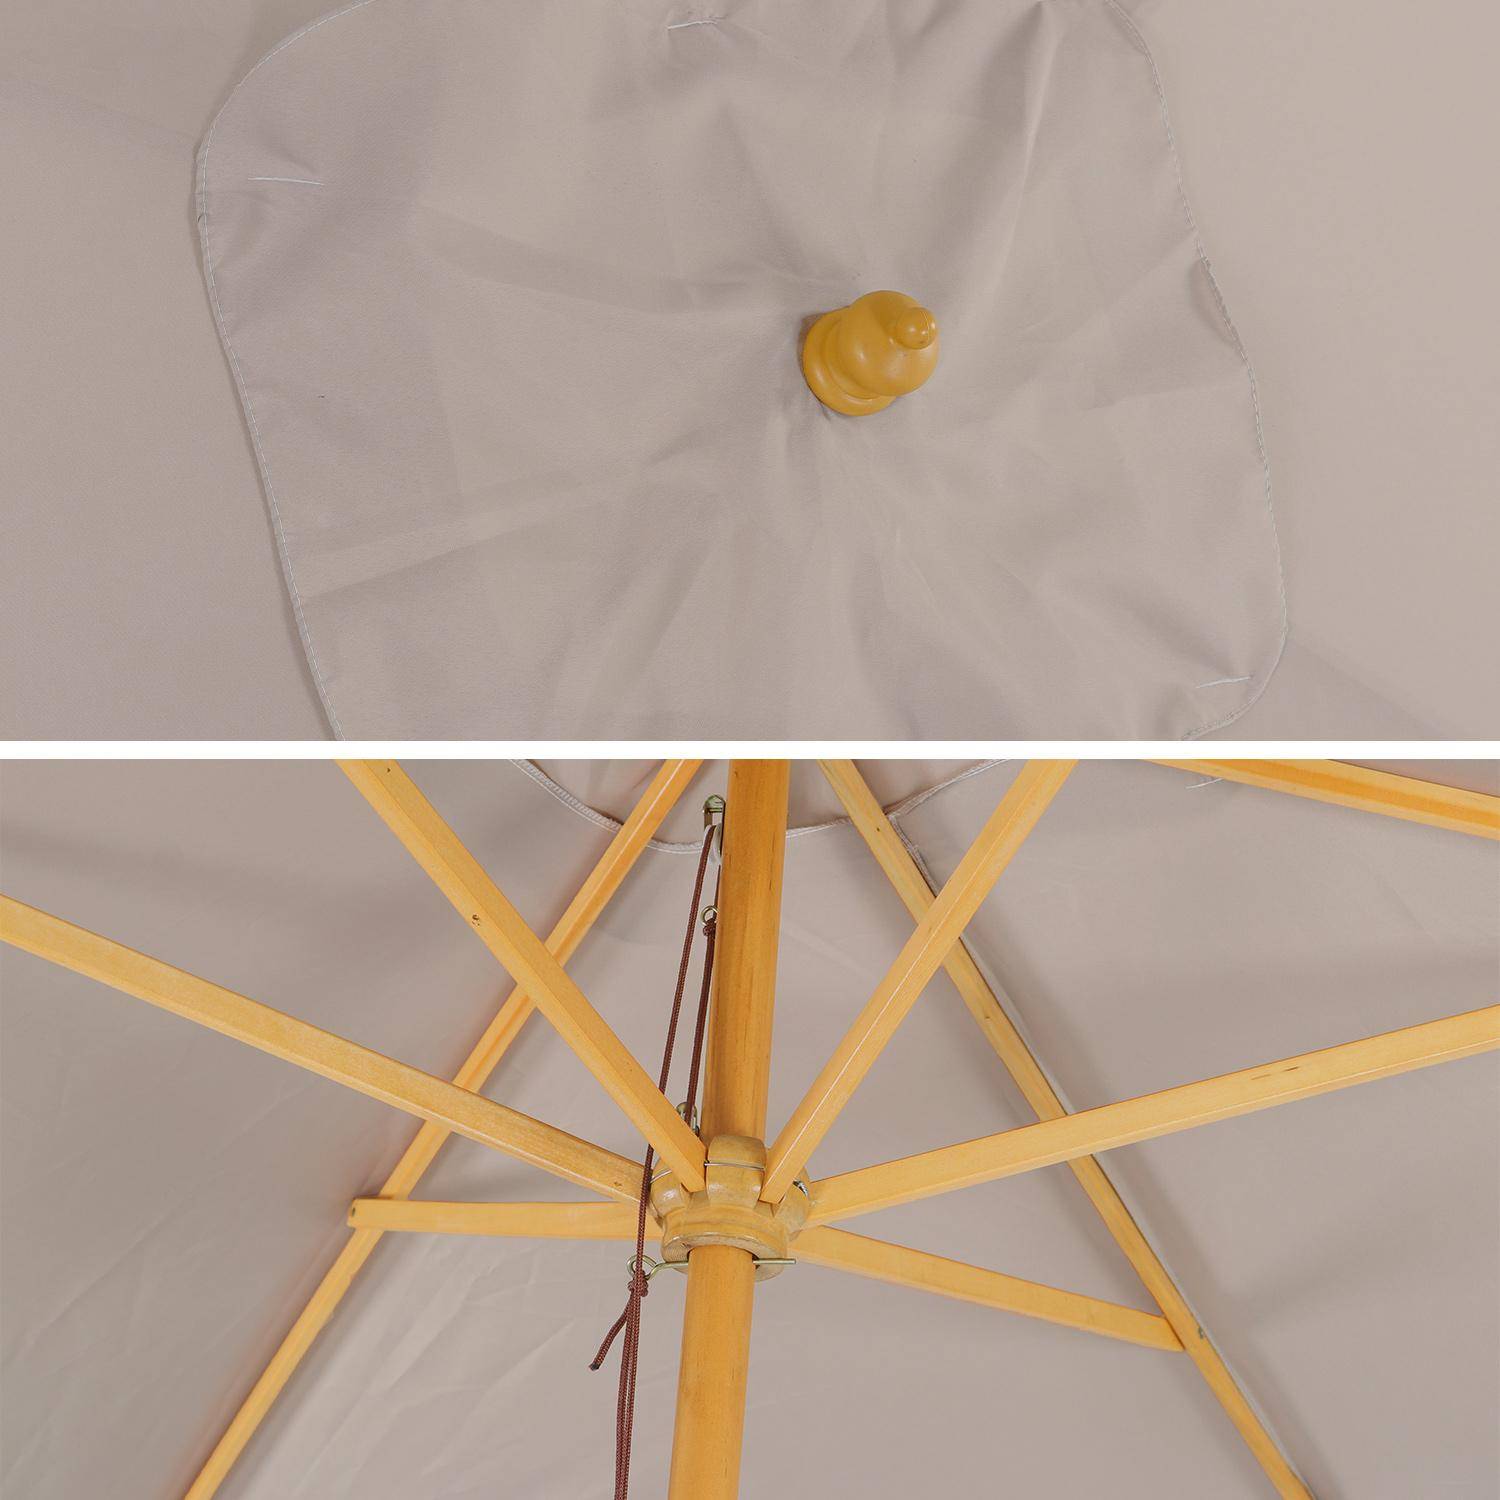 Ombrellone dritto, forma rettangolare, in legno, dimensioni: 2x3m - modello: Cabourg, colore: Beige - palo centrale in legno, sistema di apertura manuale Photo4